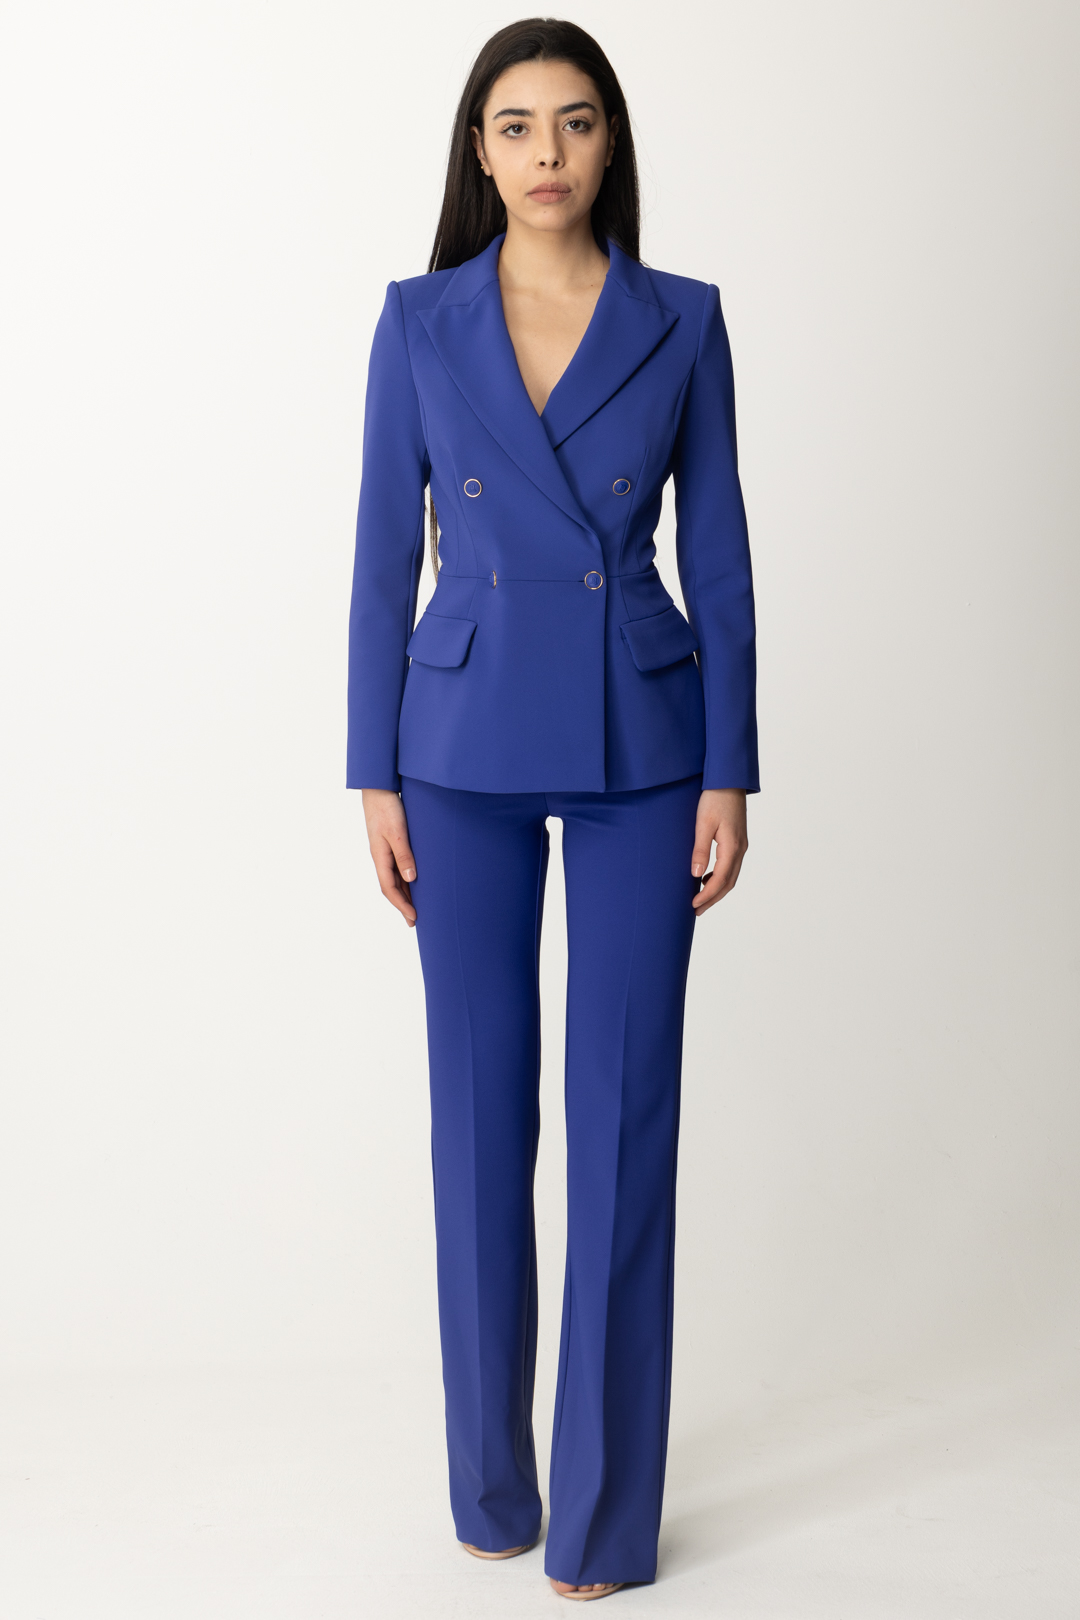 Vorschau: Elisabetta Franchi Ausgestellte Hose mit Logo-Klappen an der Taille BLUE INDACO